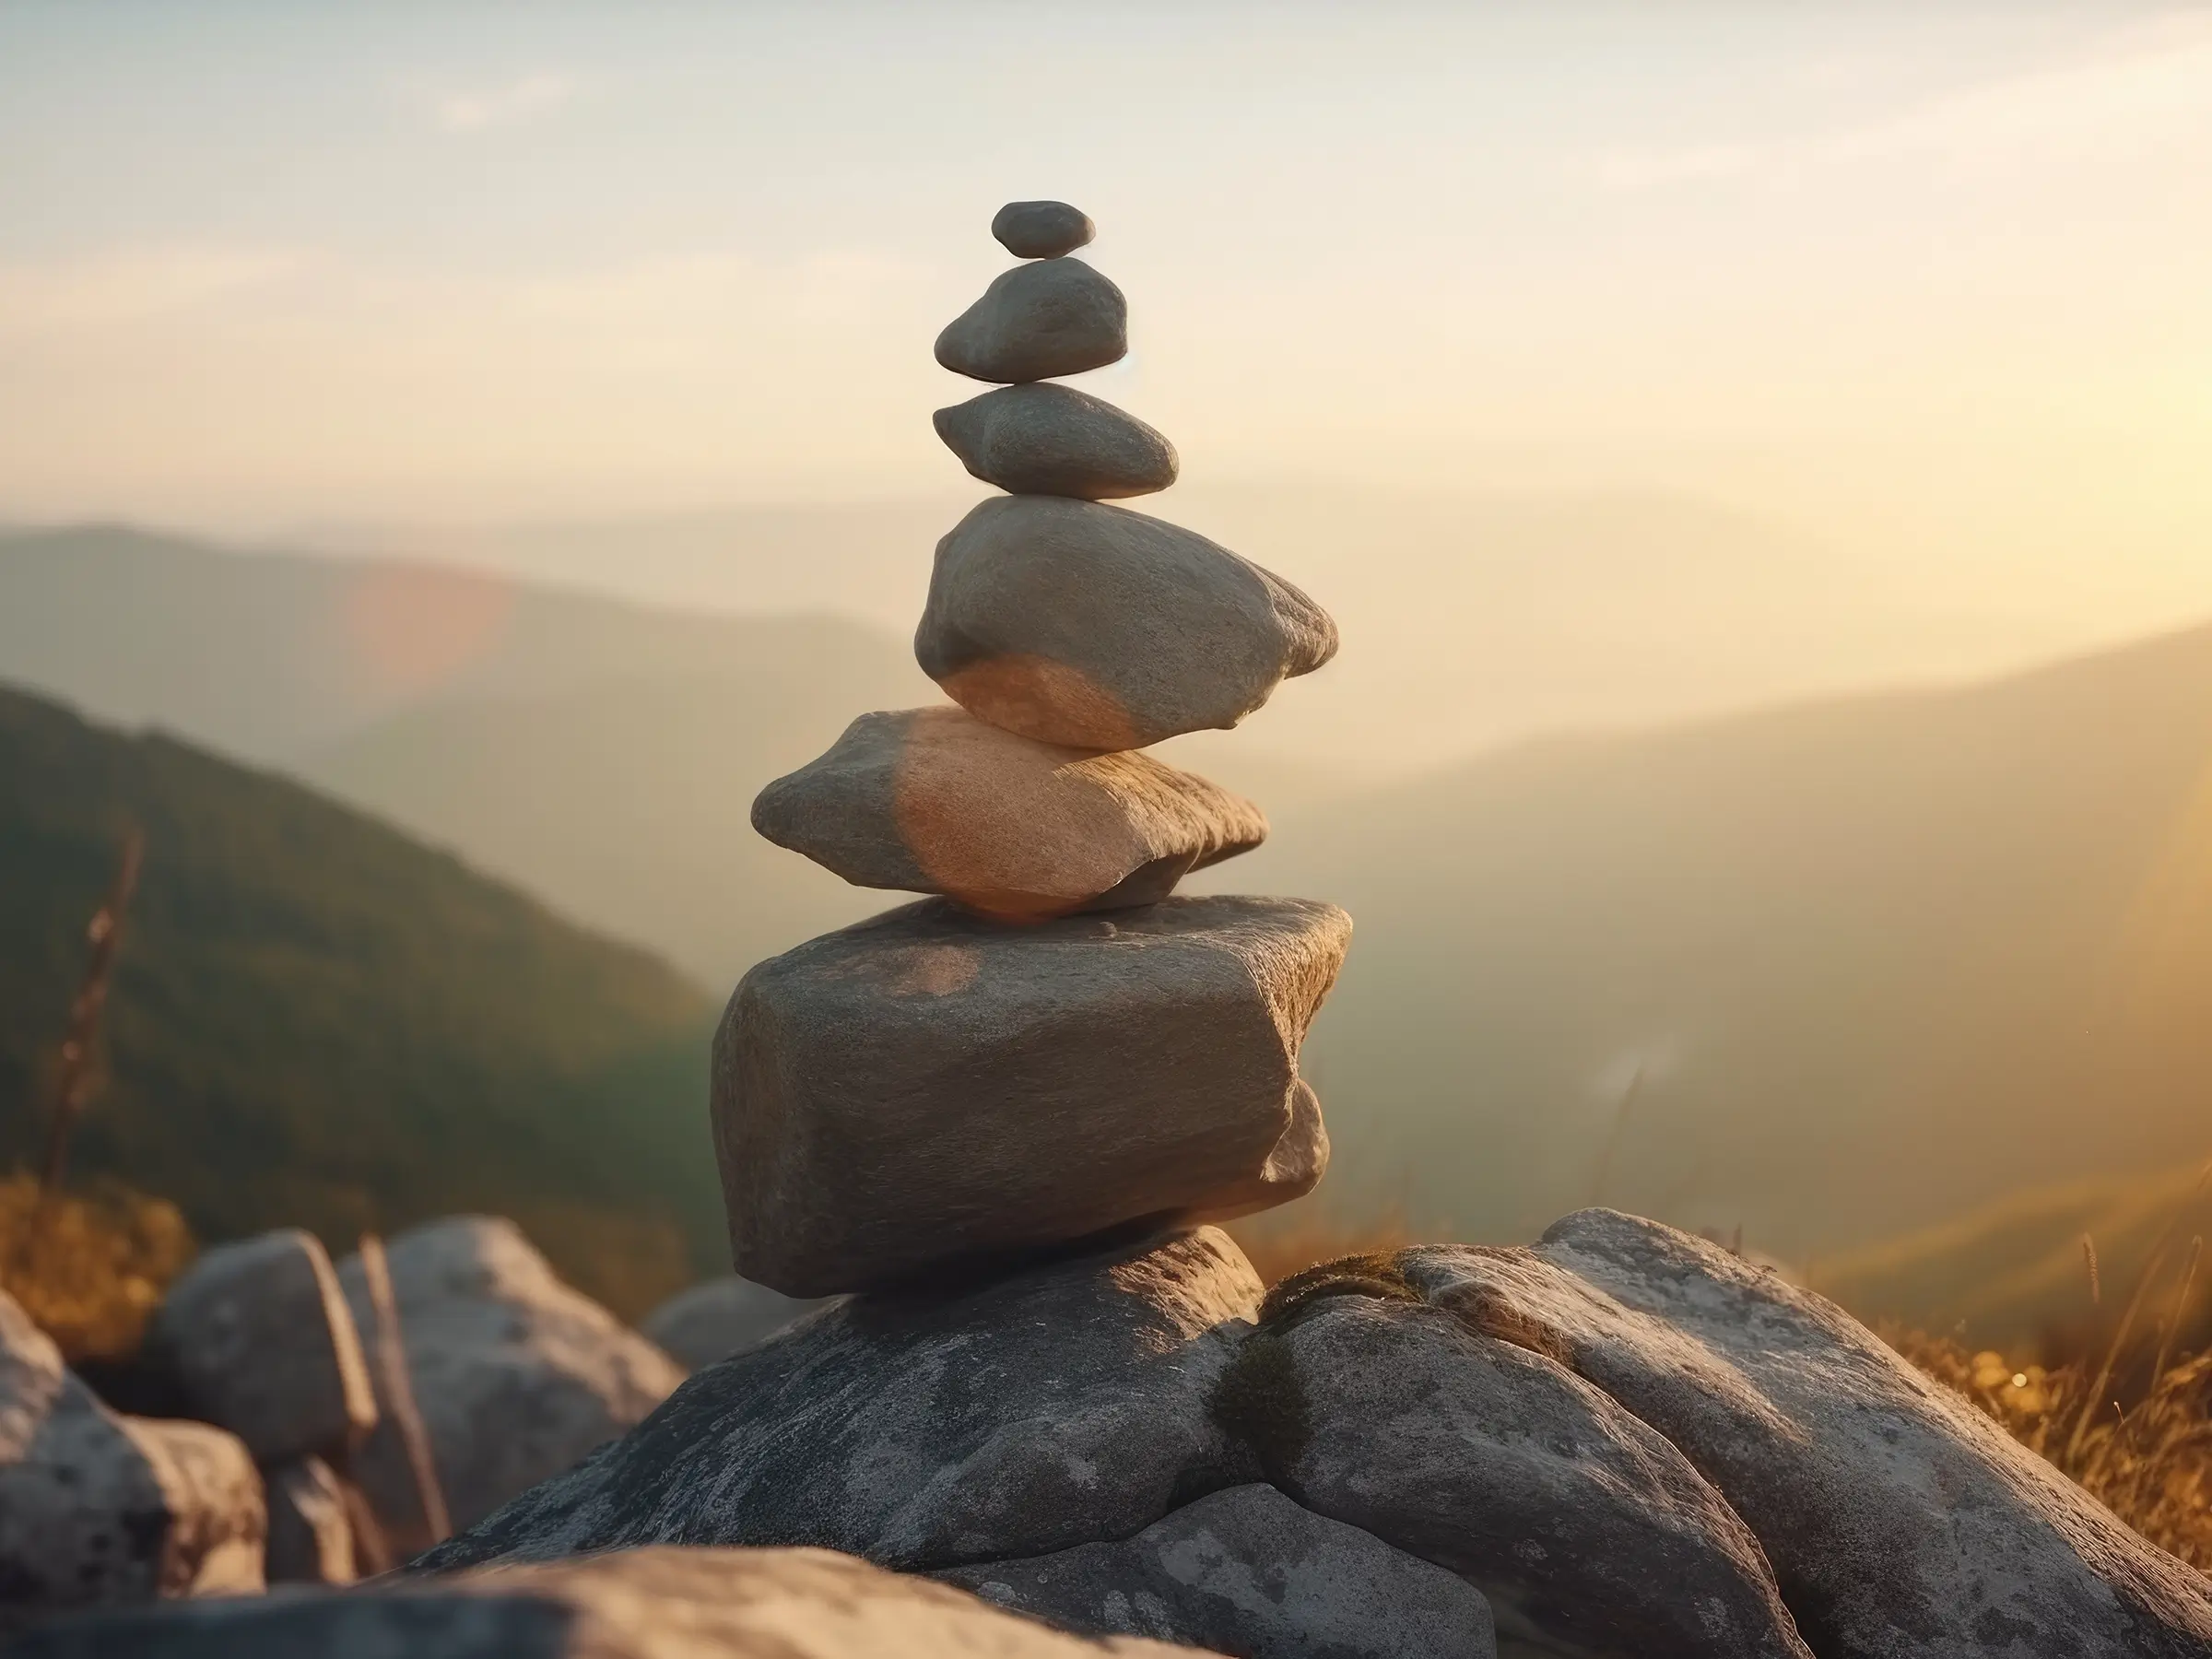 Stones Balancing atop a Mountain